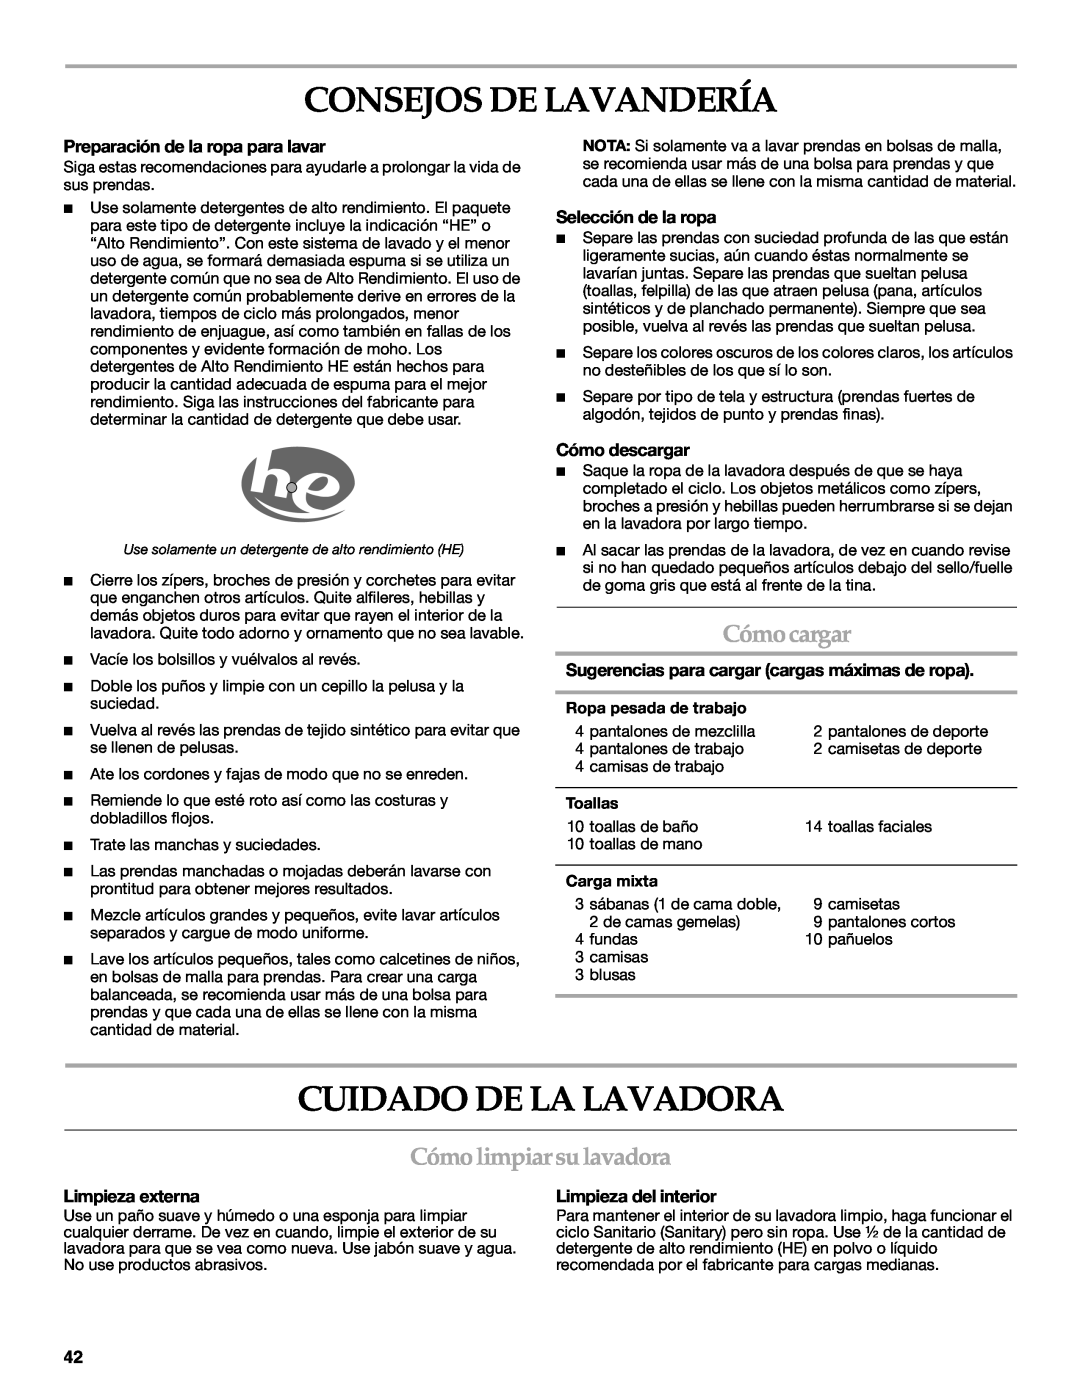 Maytag 8182969 Consejos De Lavandería, Cuidado De La Lavadora, Cómo cargar, Cómo limpiar su lavadora, Selección de la ropa 